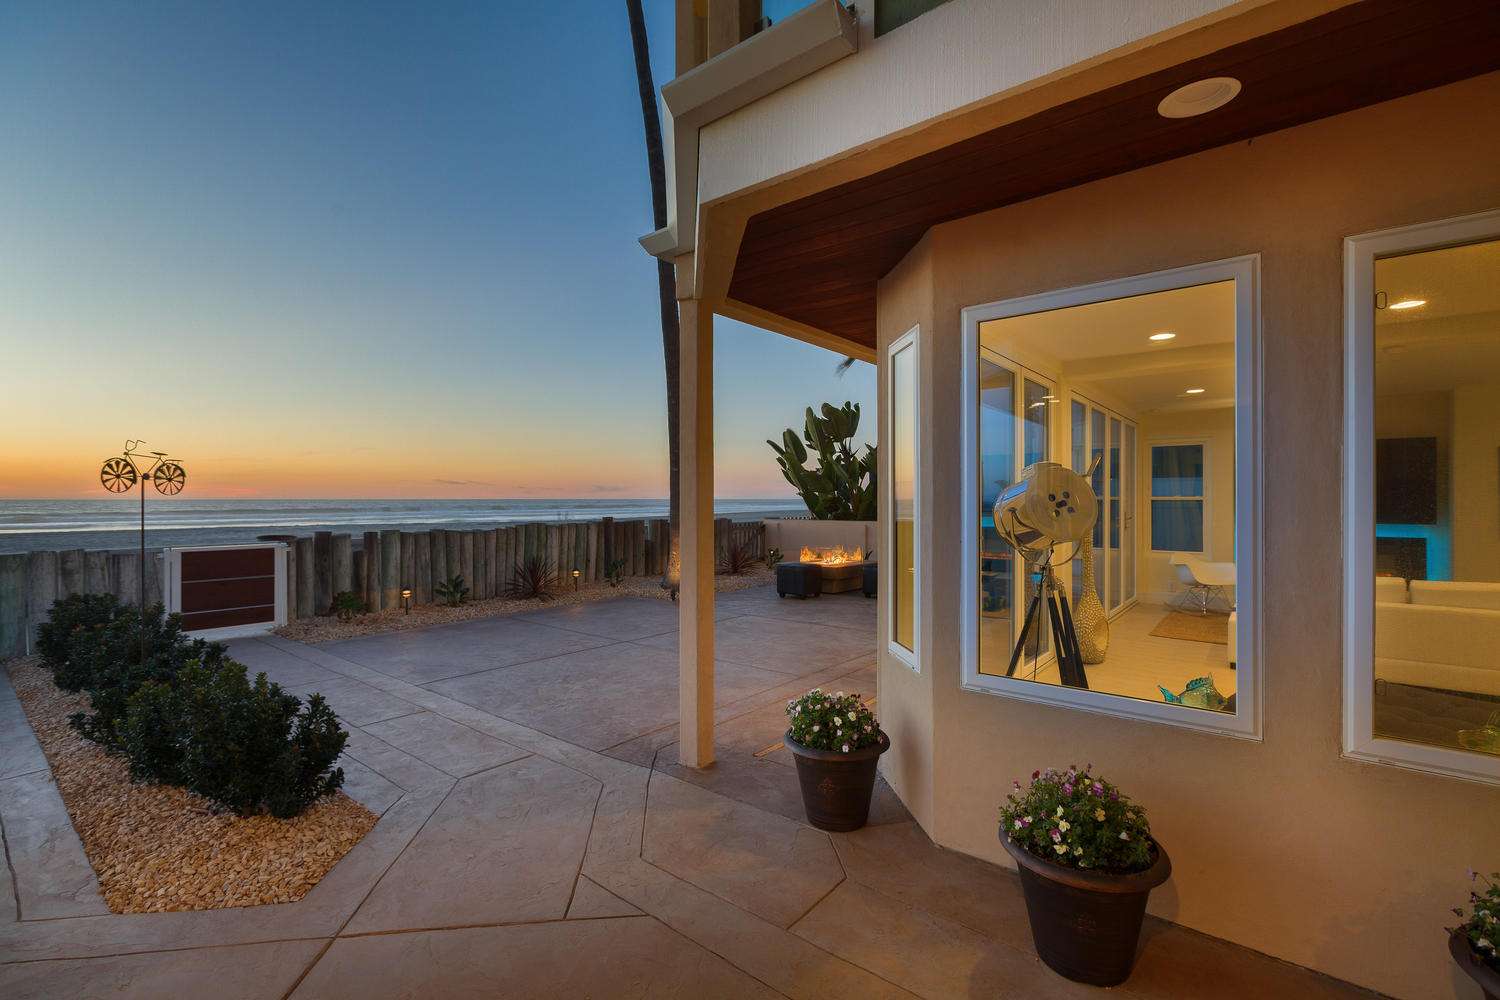 San Diego Vacation Rentals, Luxury Beachfront Vacation Rental ...